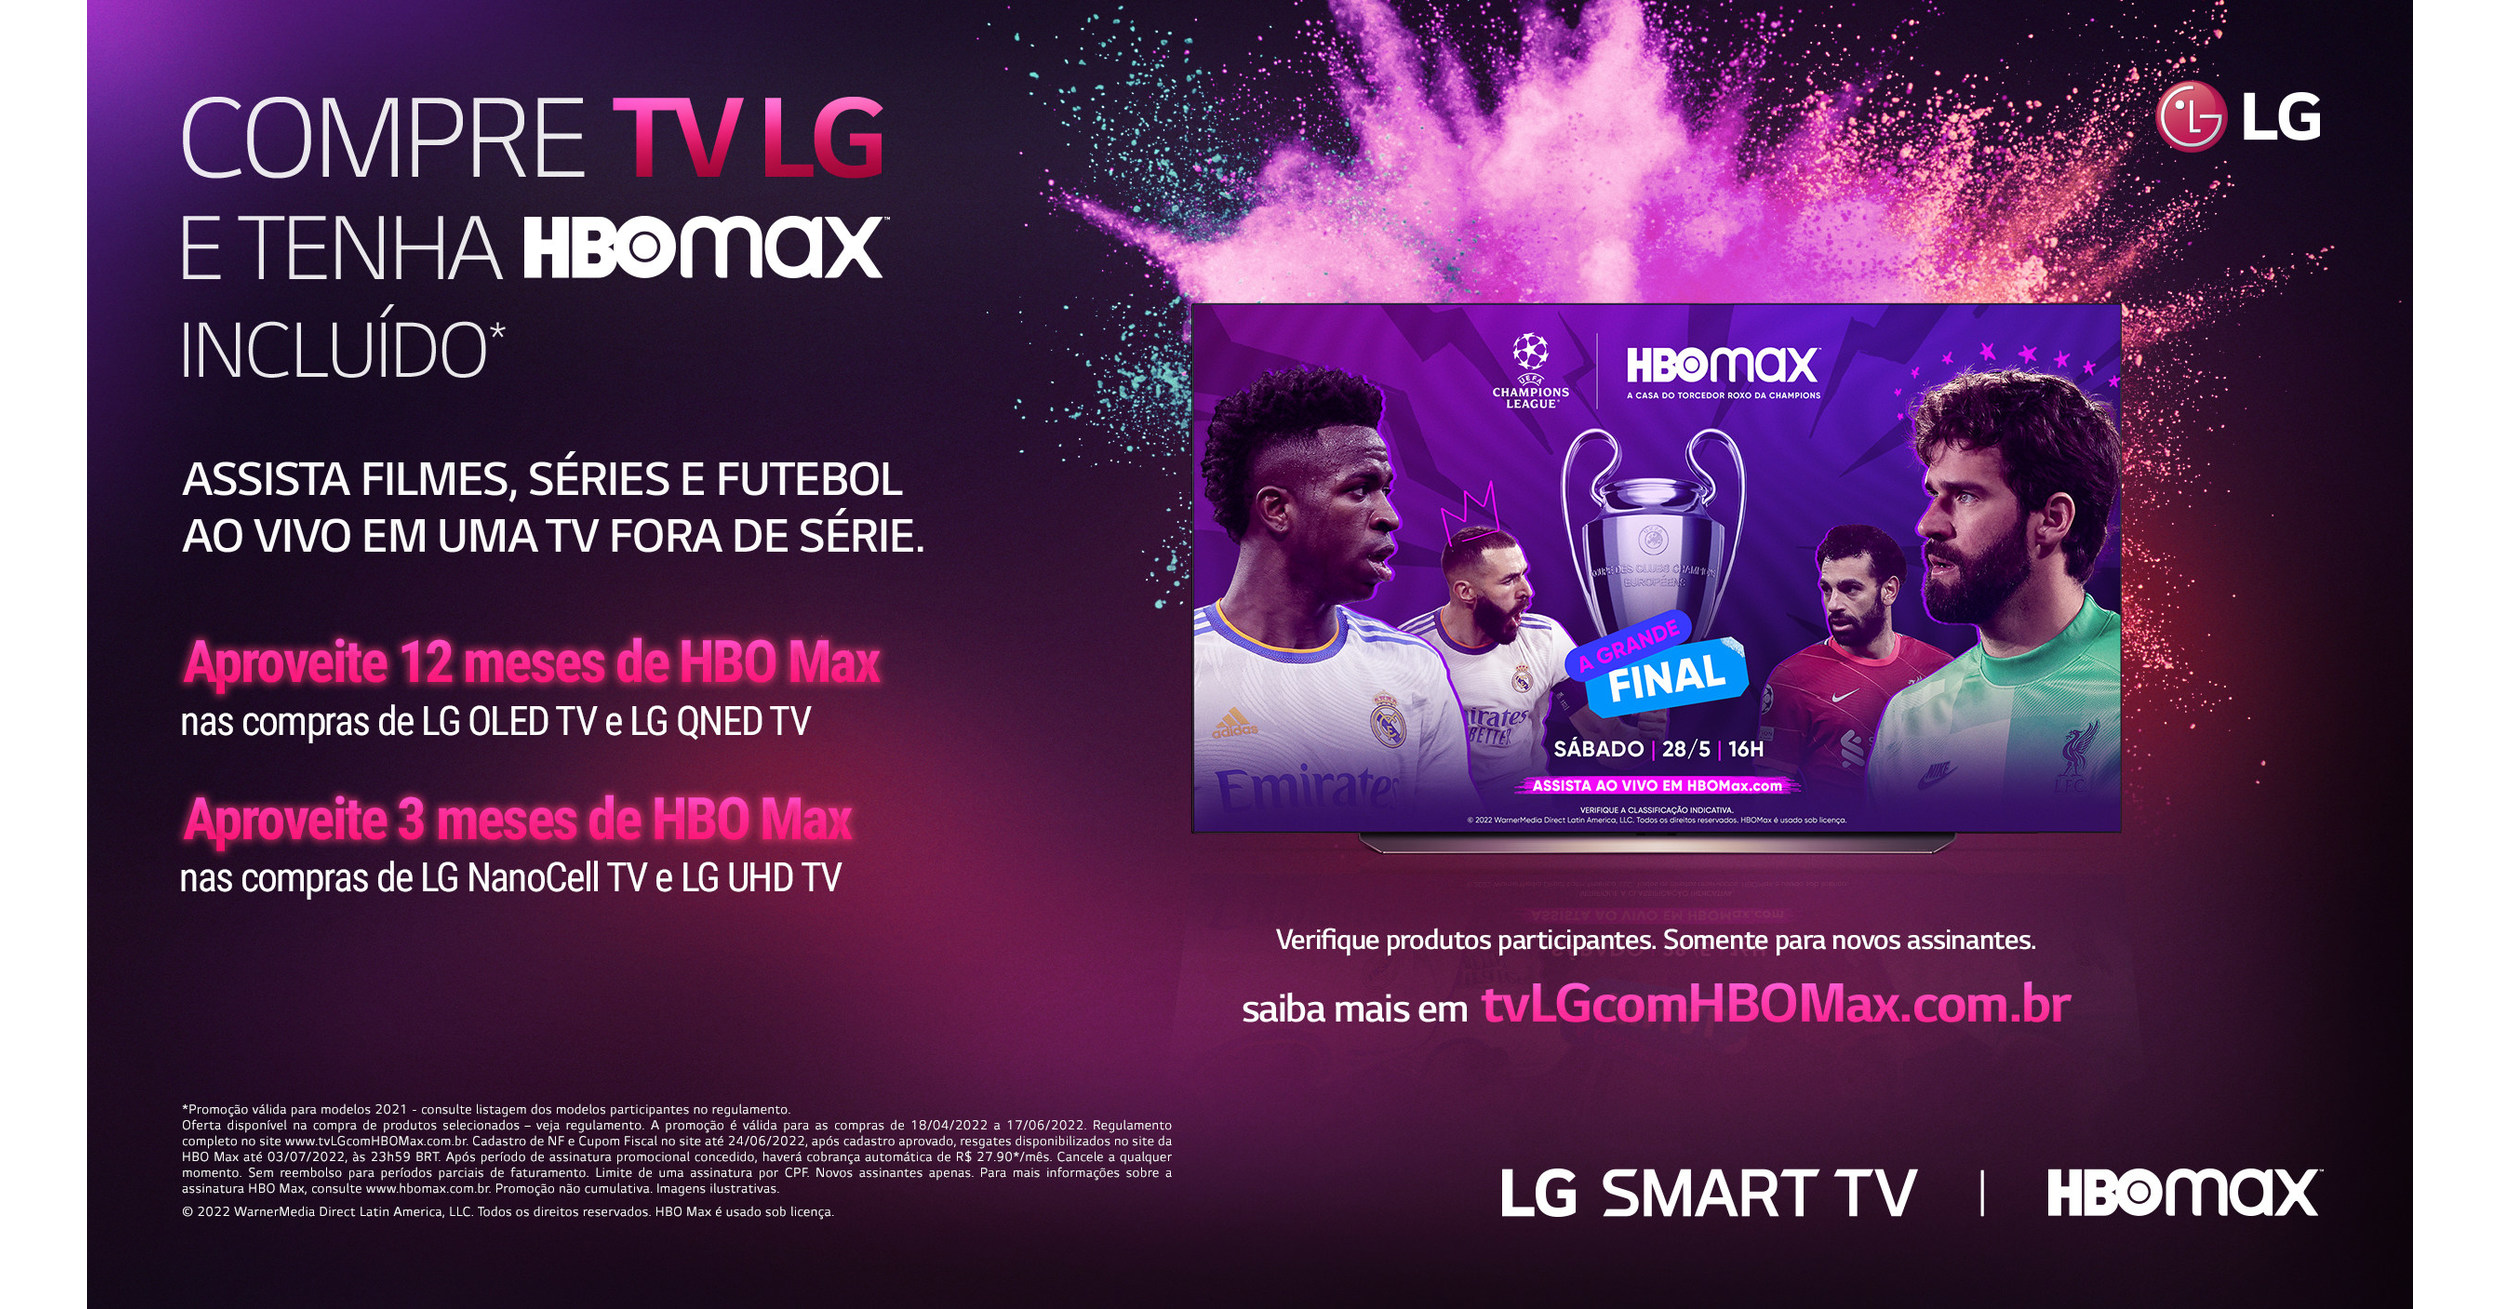 HBO Max Brasil on X: Assista todos os jogos da Champions League ao vivo,  só na HBO Max. ⚽️💜 / X